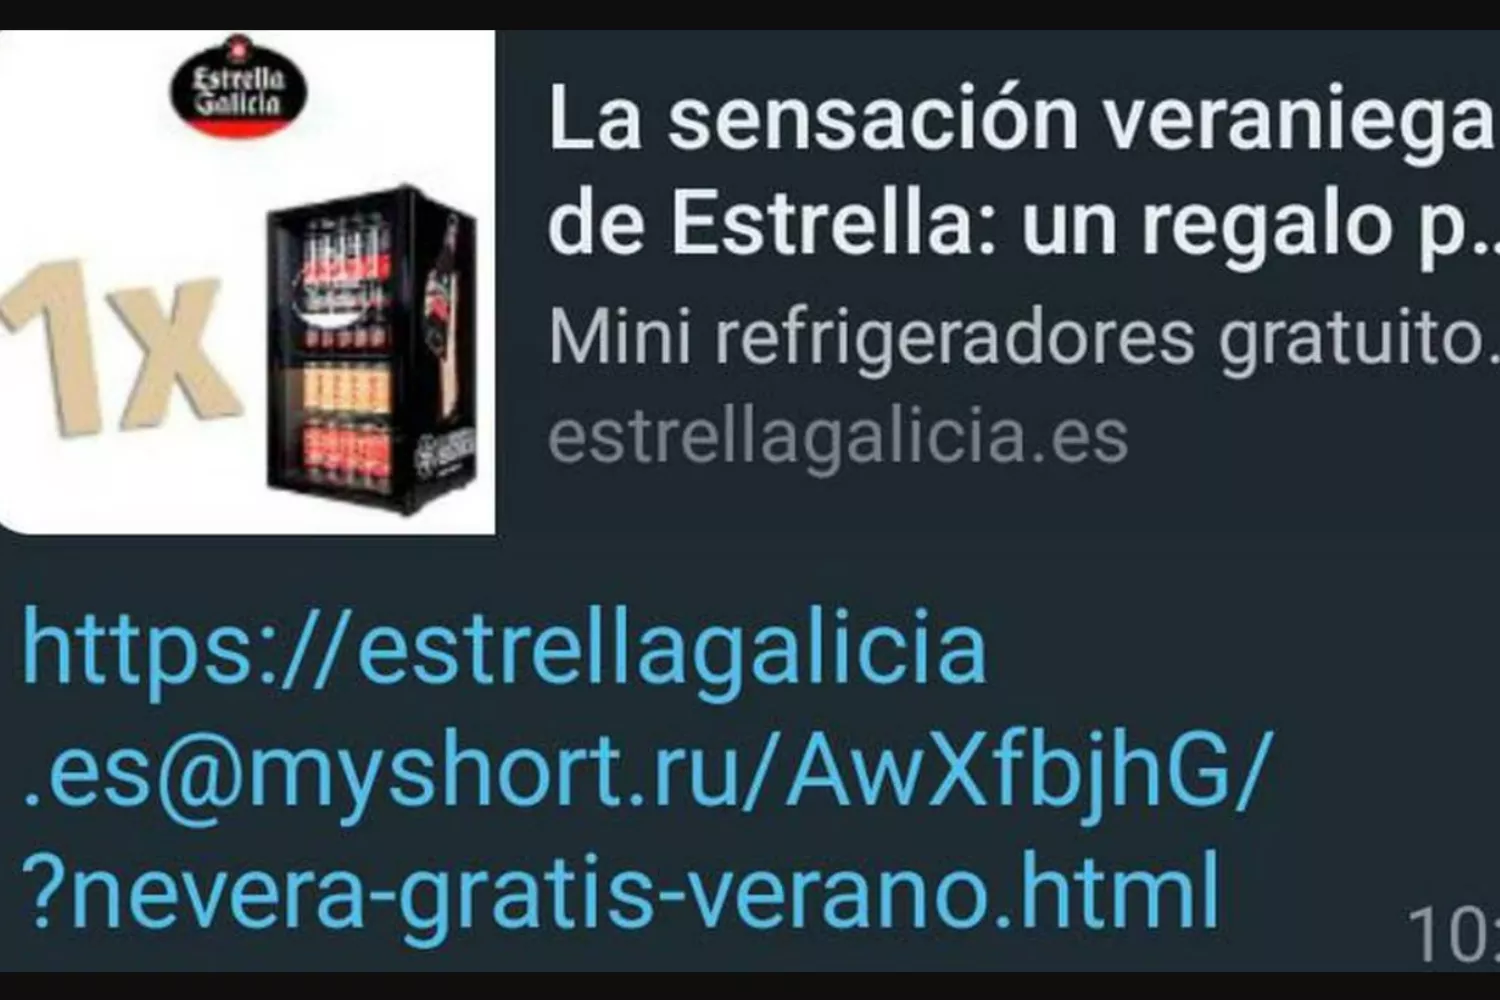 El mensaje de WhatsApp con la estafa de Estrella Galicia / CG